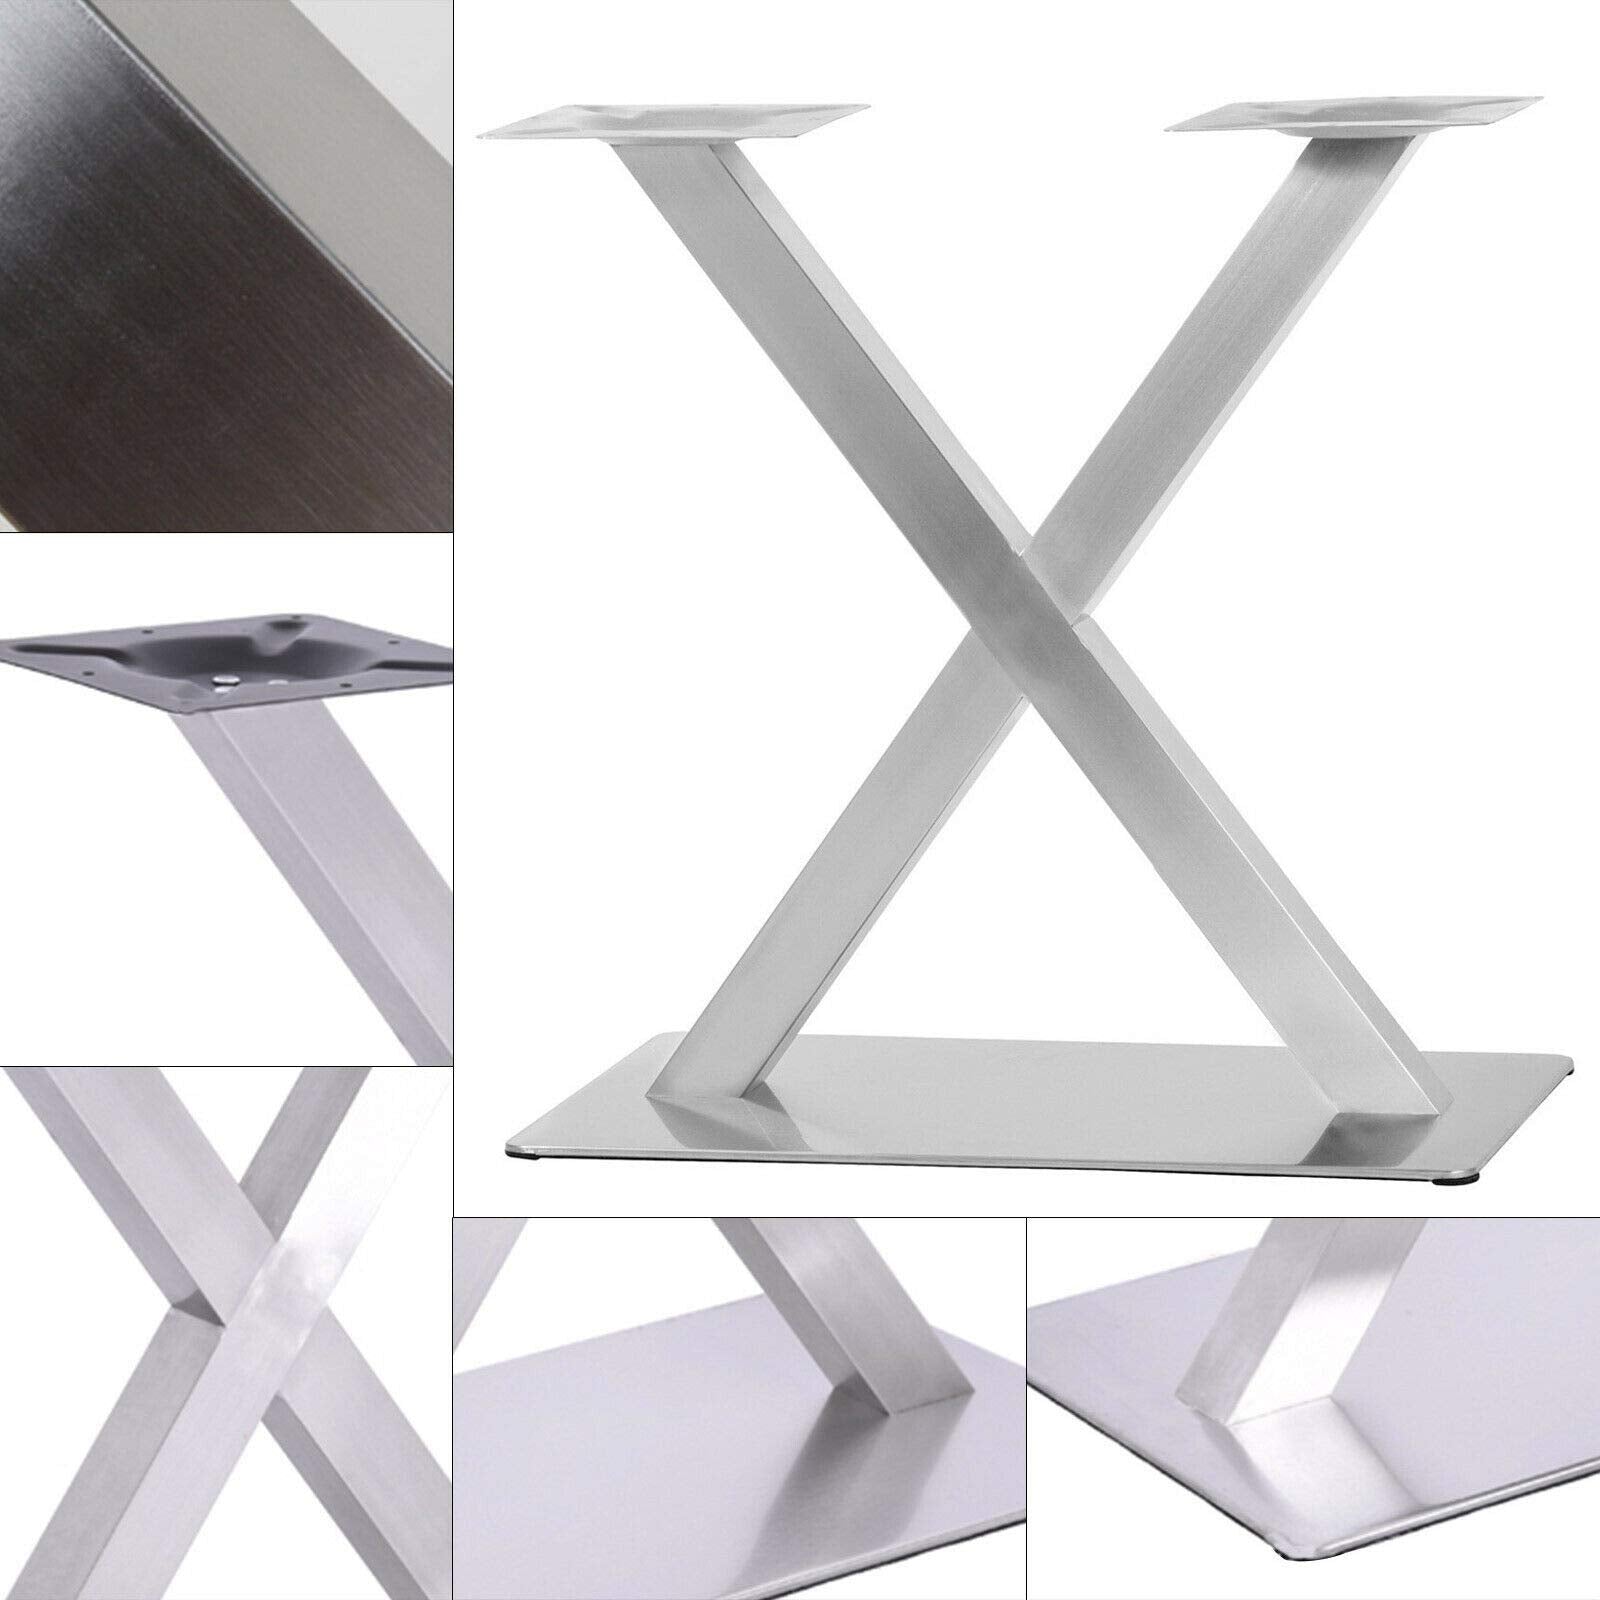 Edelstahl Tischgestell Modell X Untergestell Tischfuß Bistrotisch Gastro Tisch